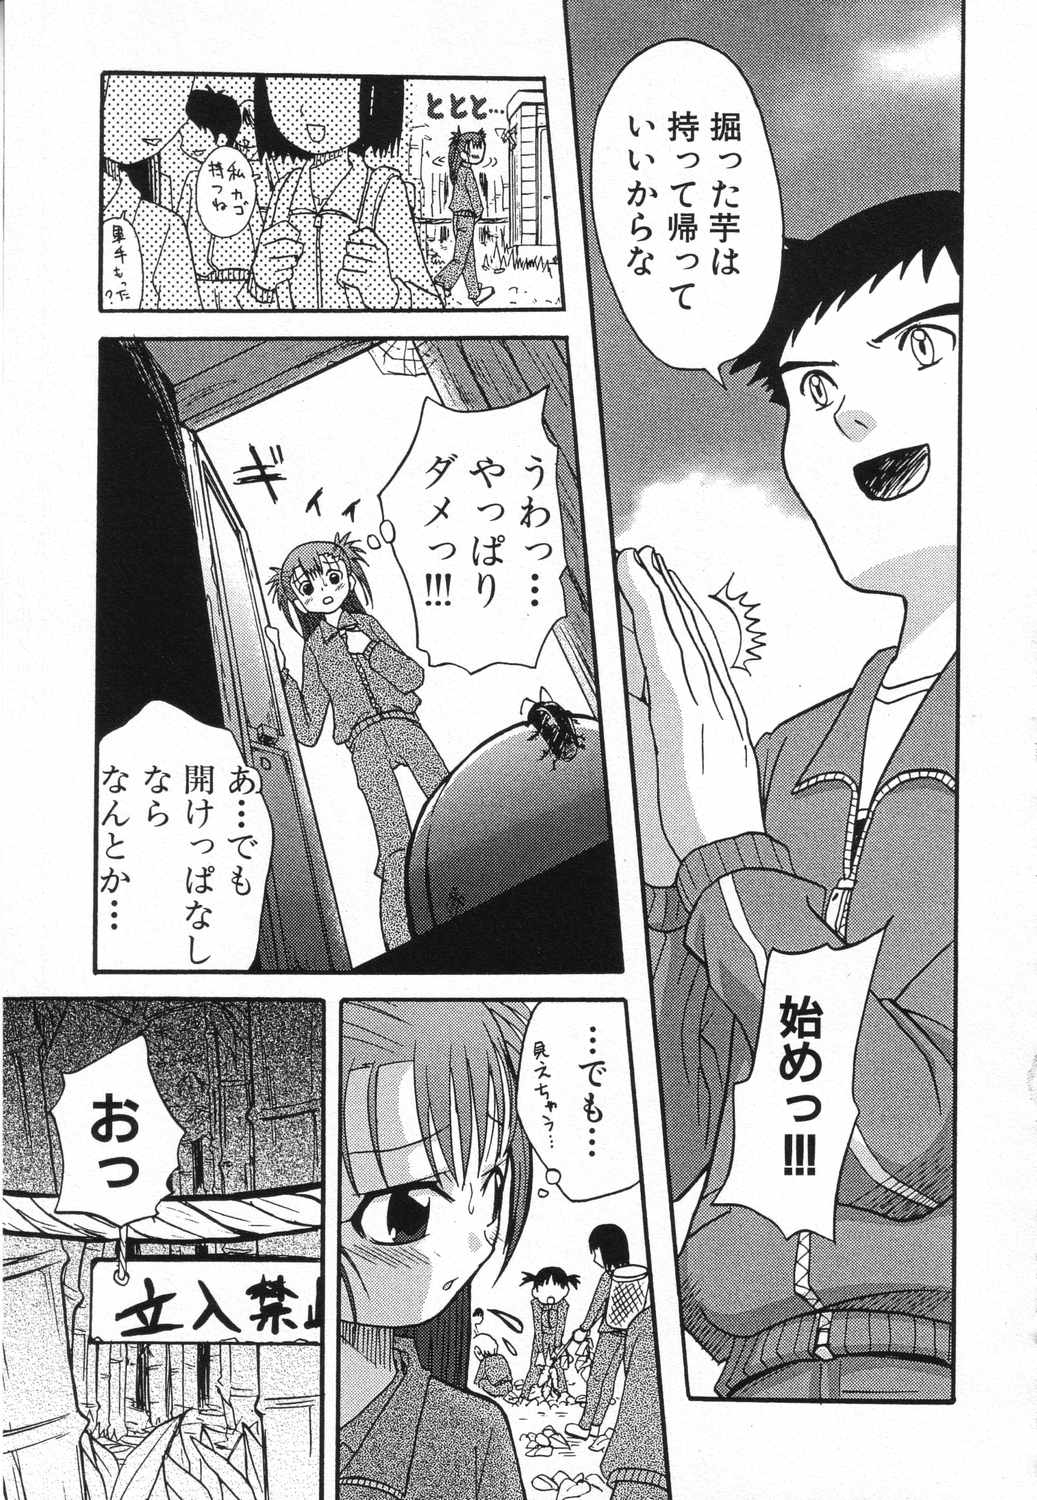 [Anthology] LOCO vol.5 Aki no Omorashi Musume Tokushuu page 42 full